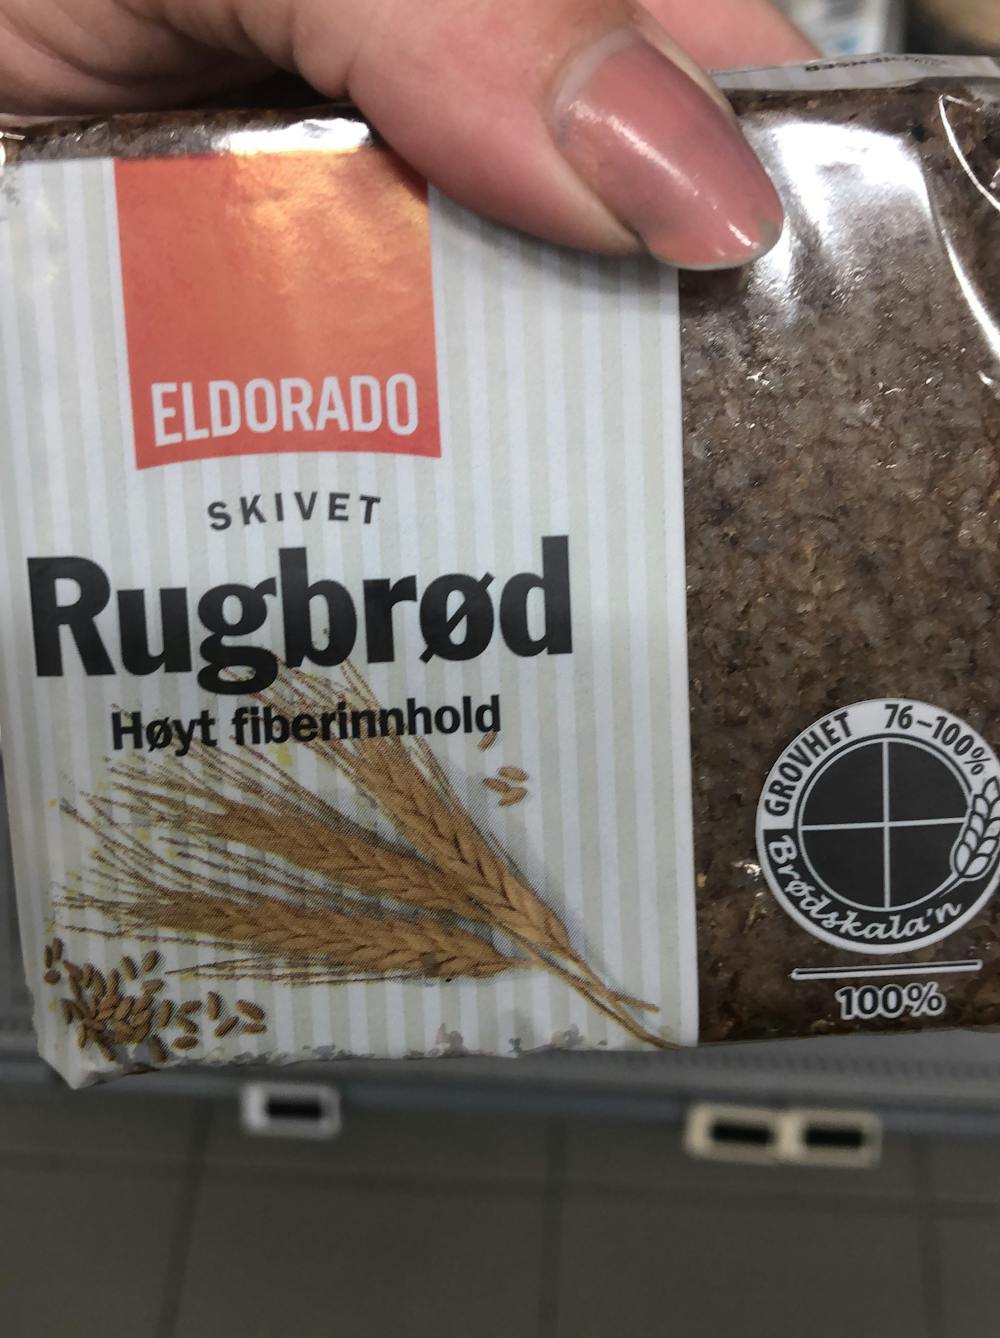 Rugbrød, Eldorado